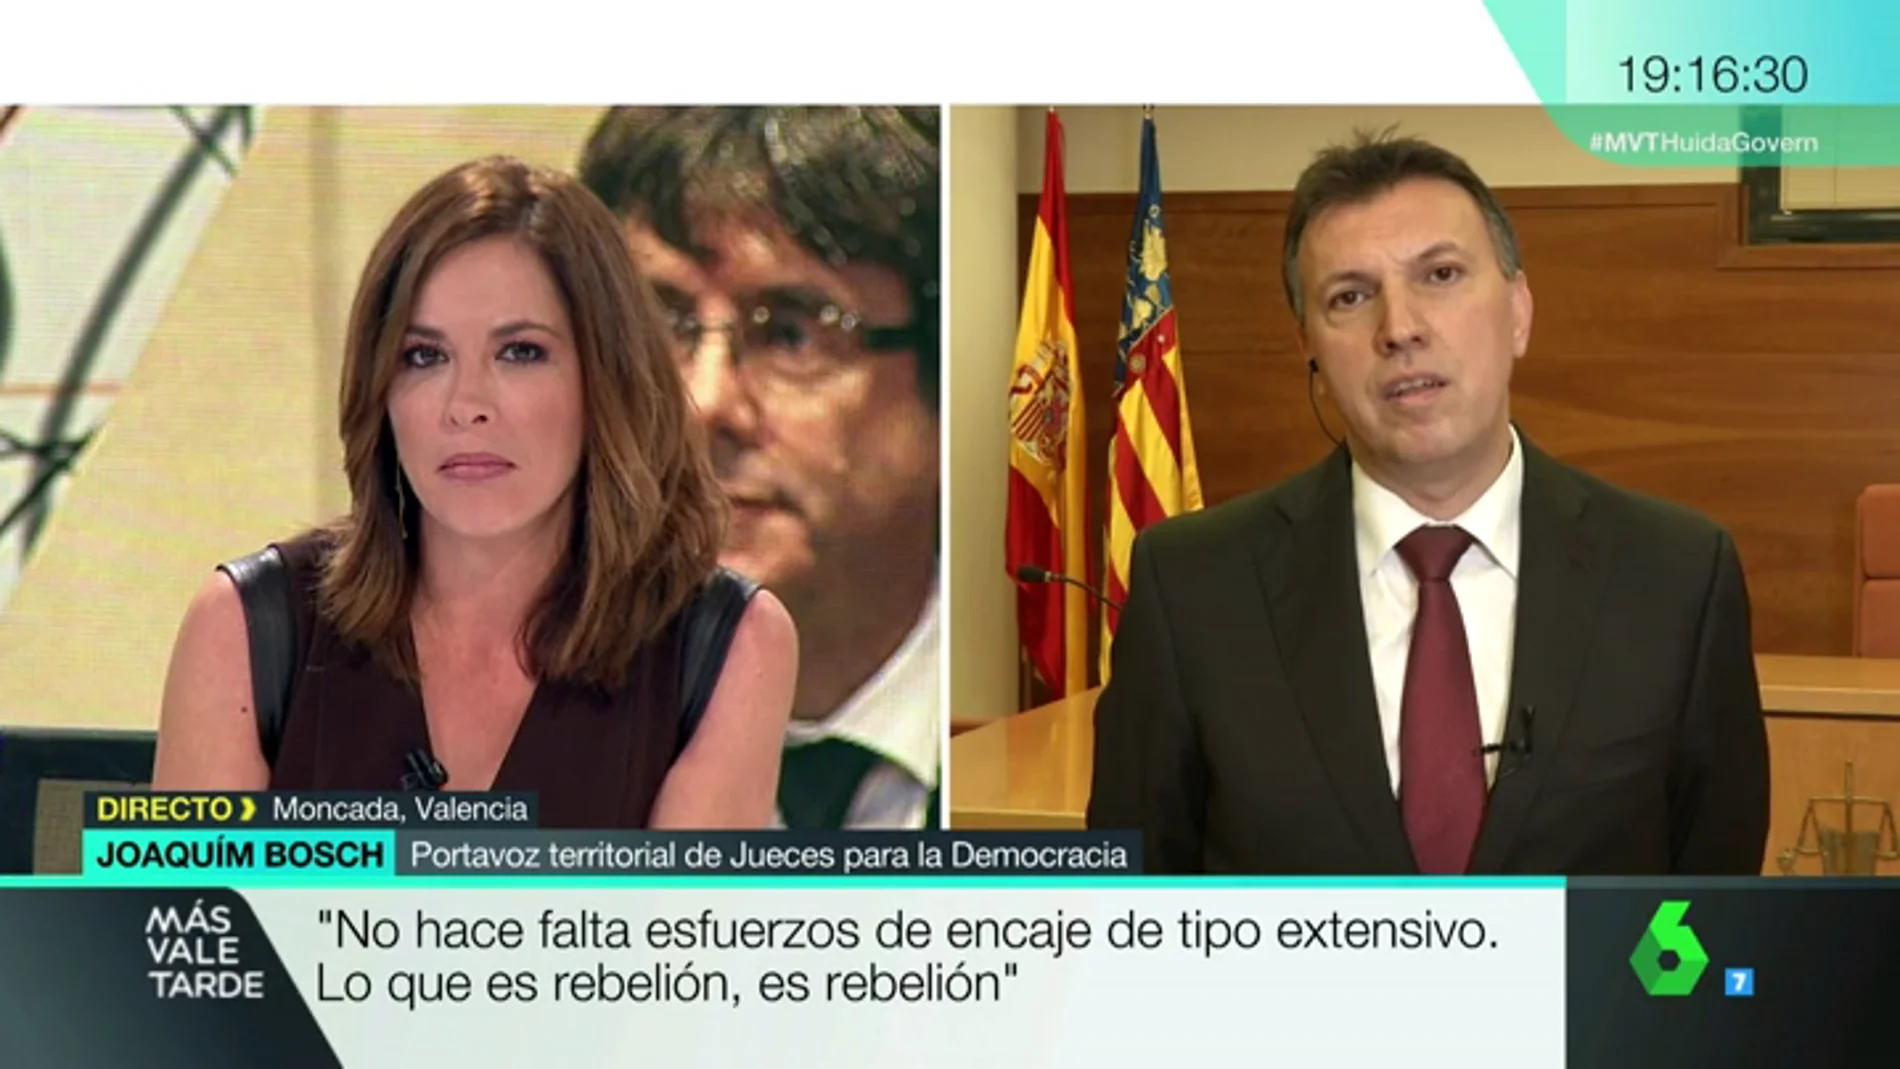 Joaquim Bosch: "El delito de rebelión exige una violencia relevante que en Cataluña no se ha producido"